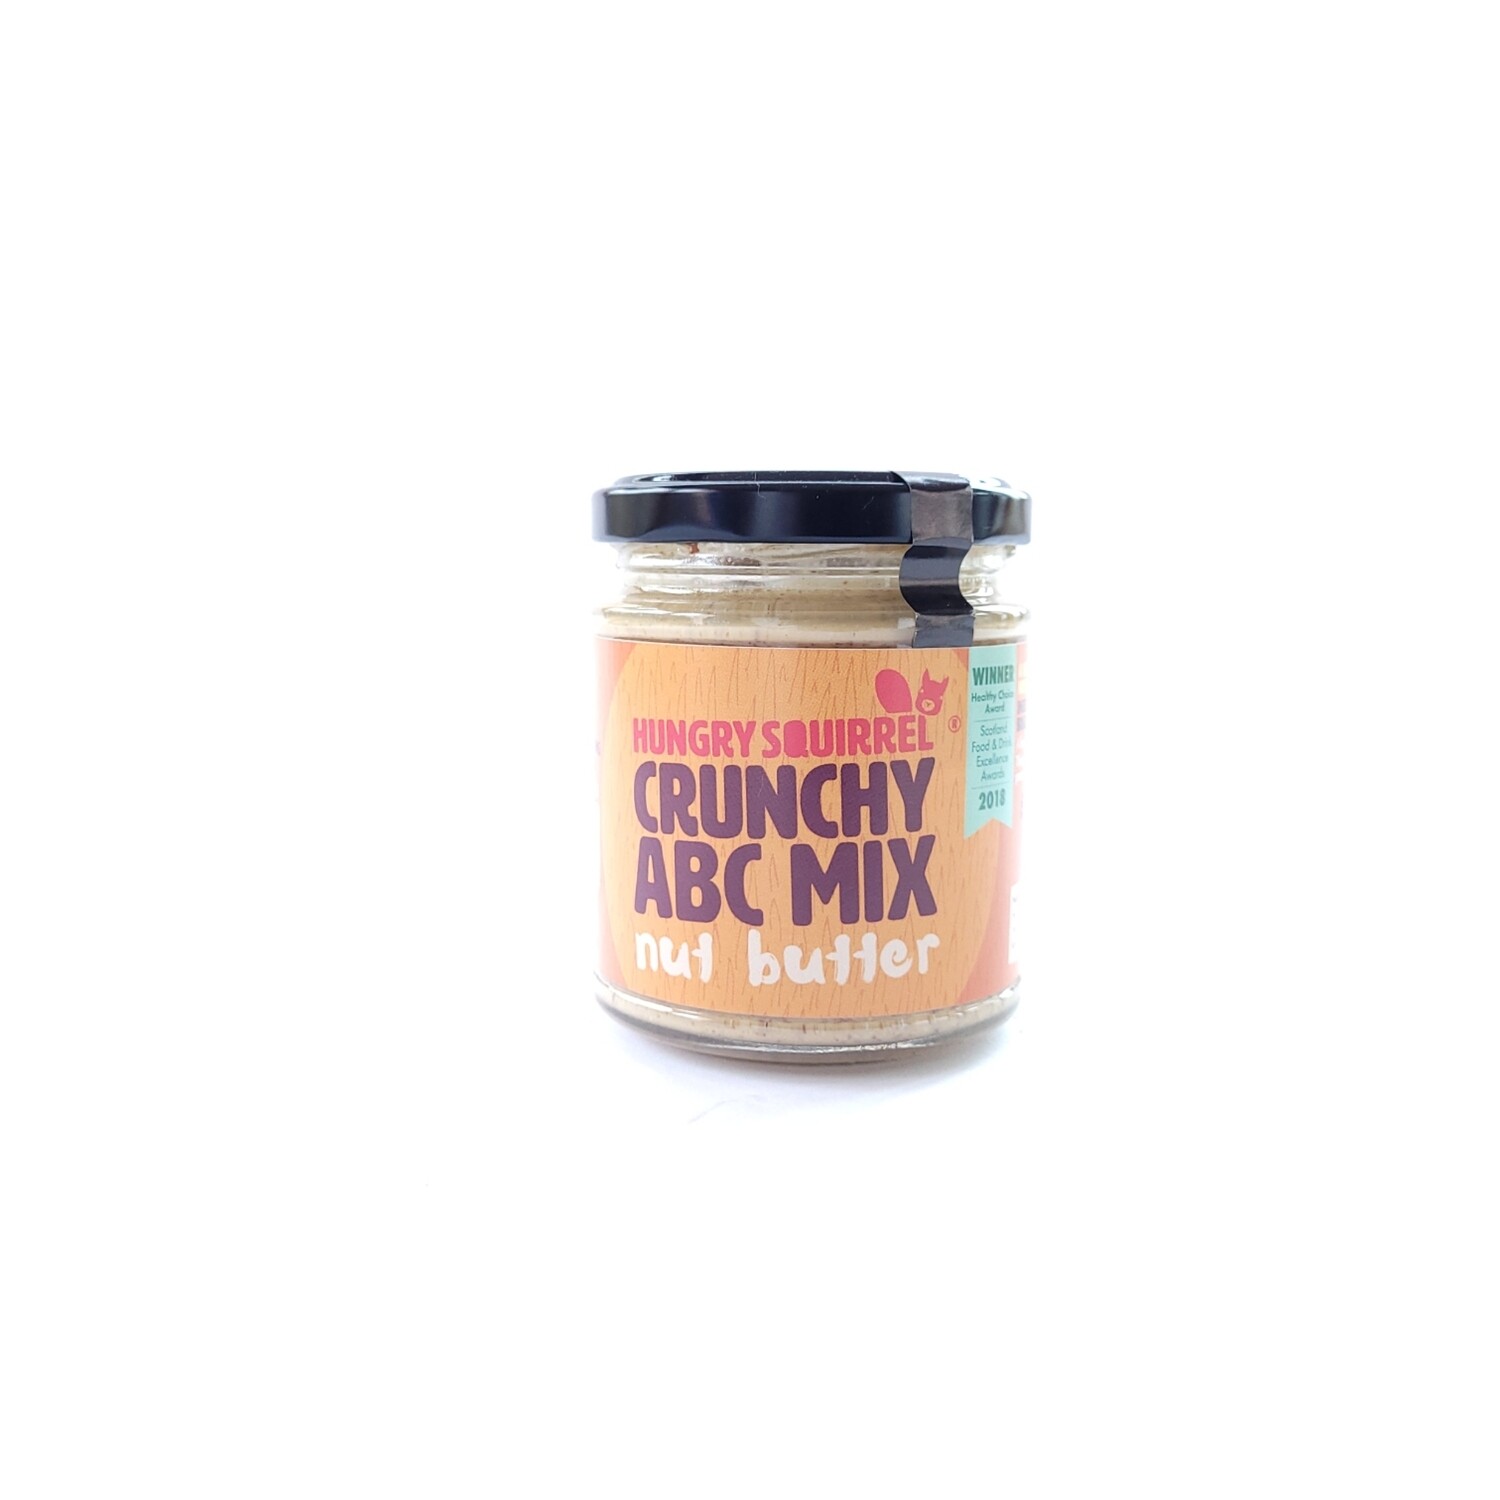 Crunchy ABC Mix nut butter 180g